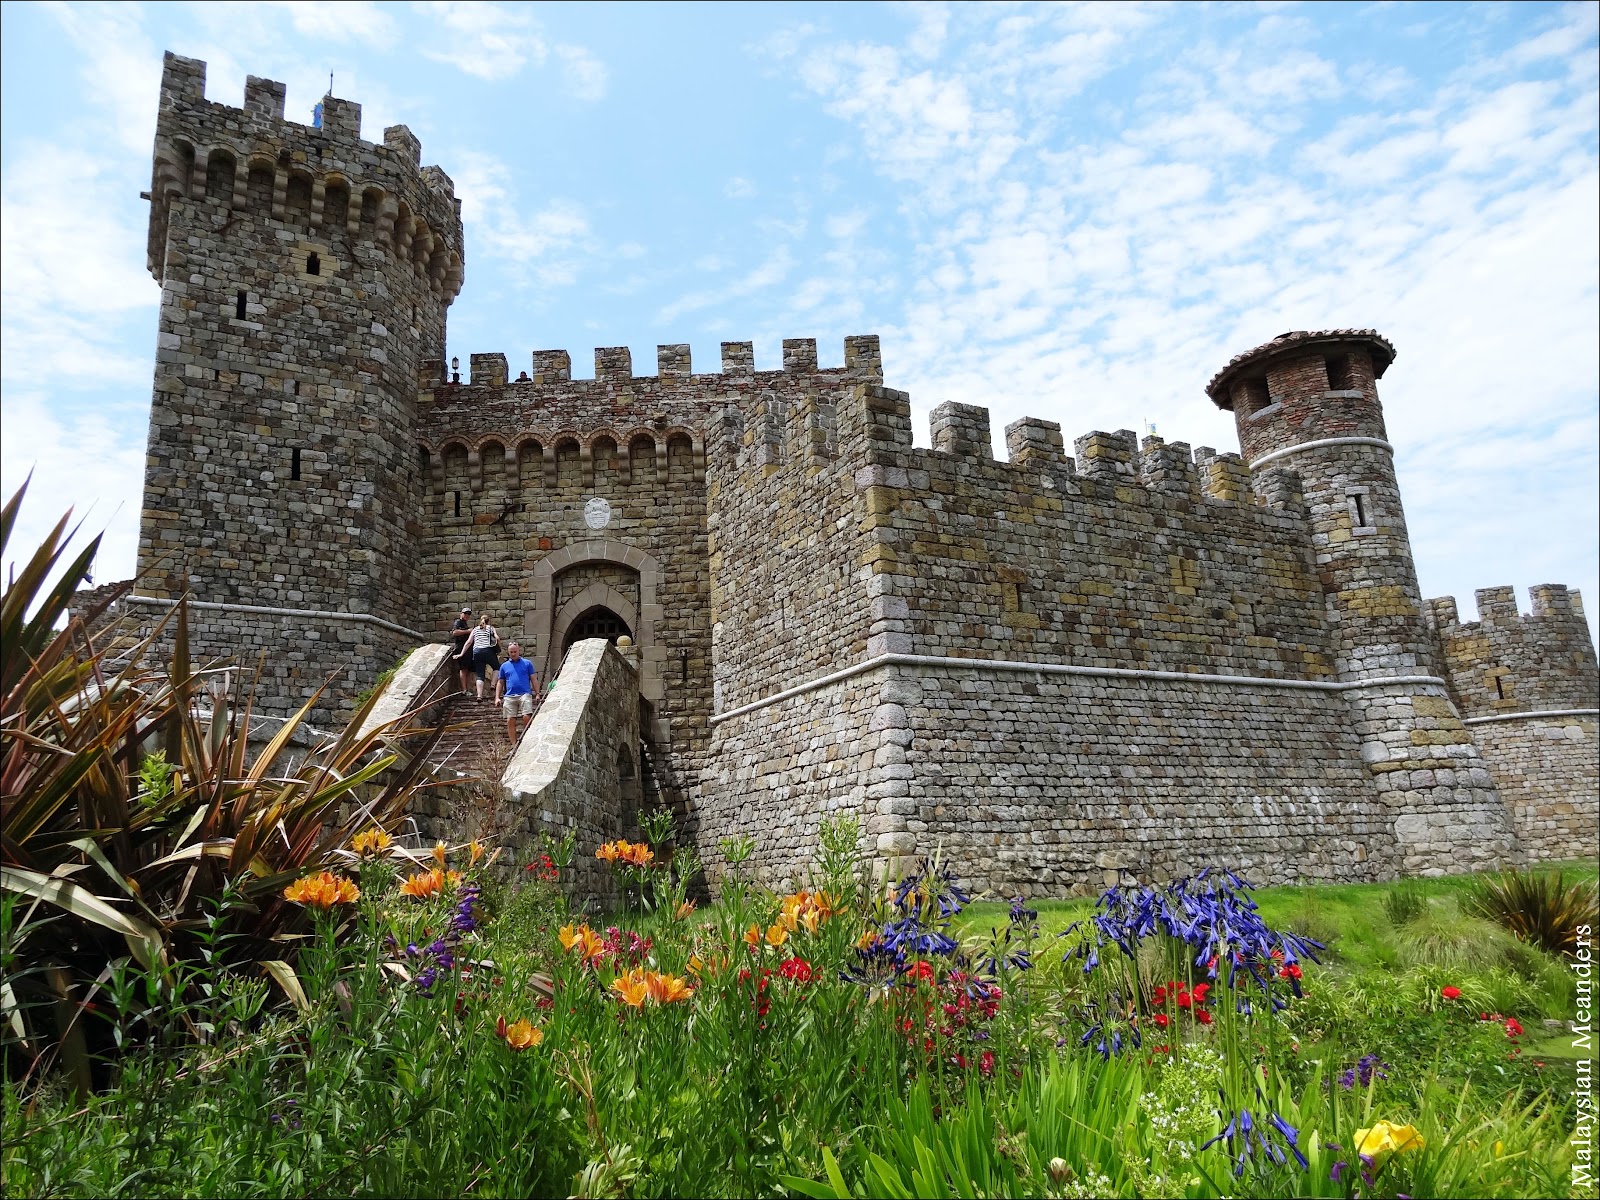 Malaysian Meanders: Castello di Amorosa: Medieval Castle ...
